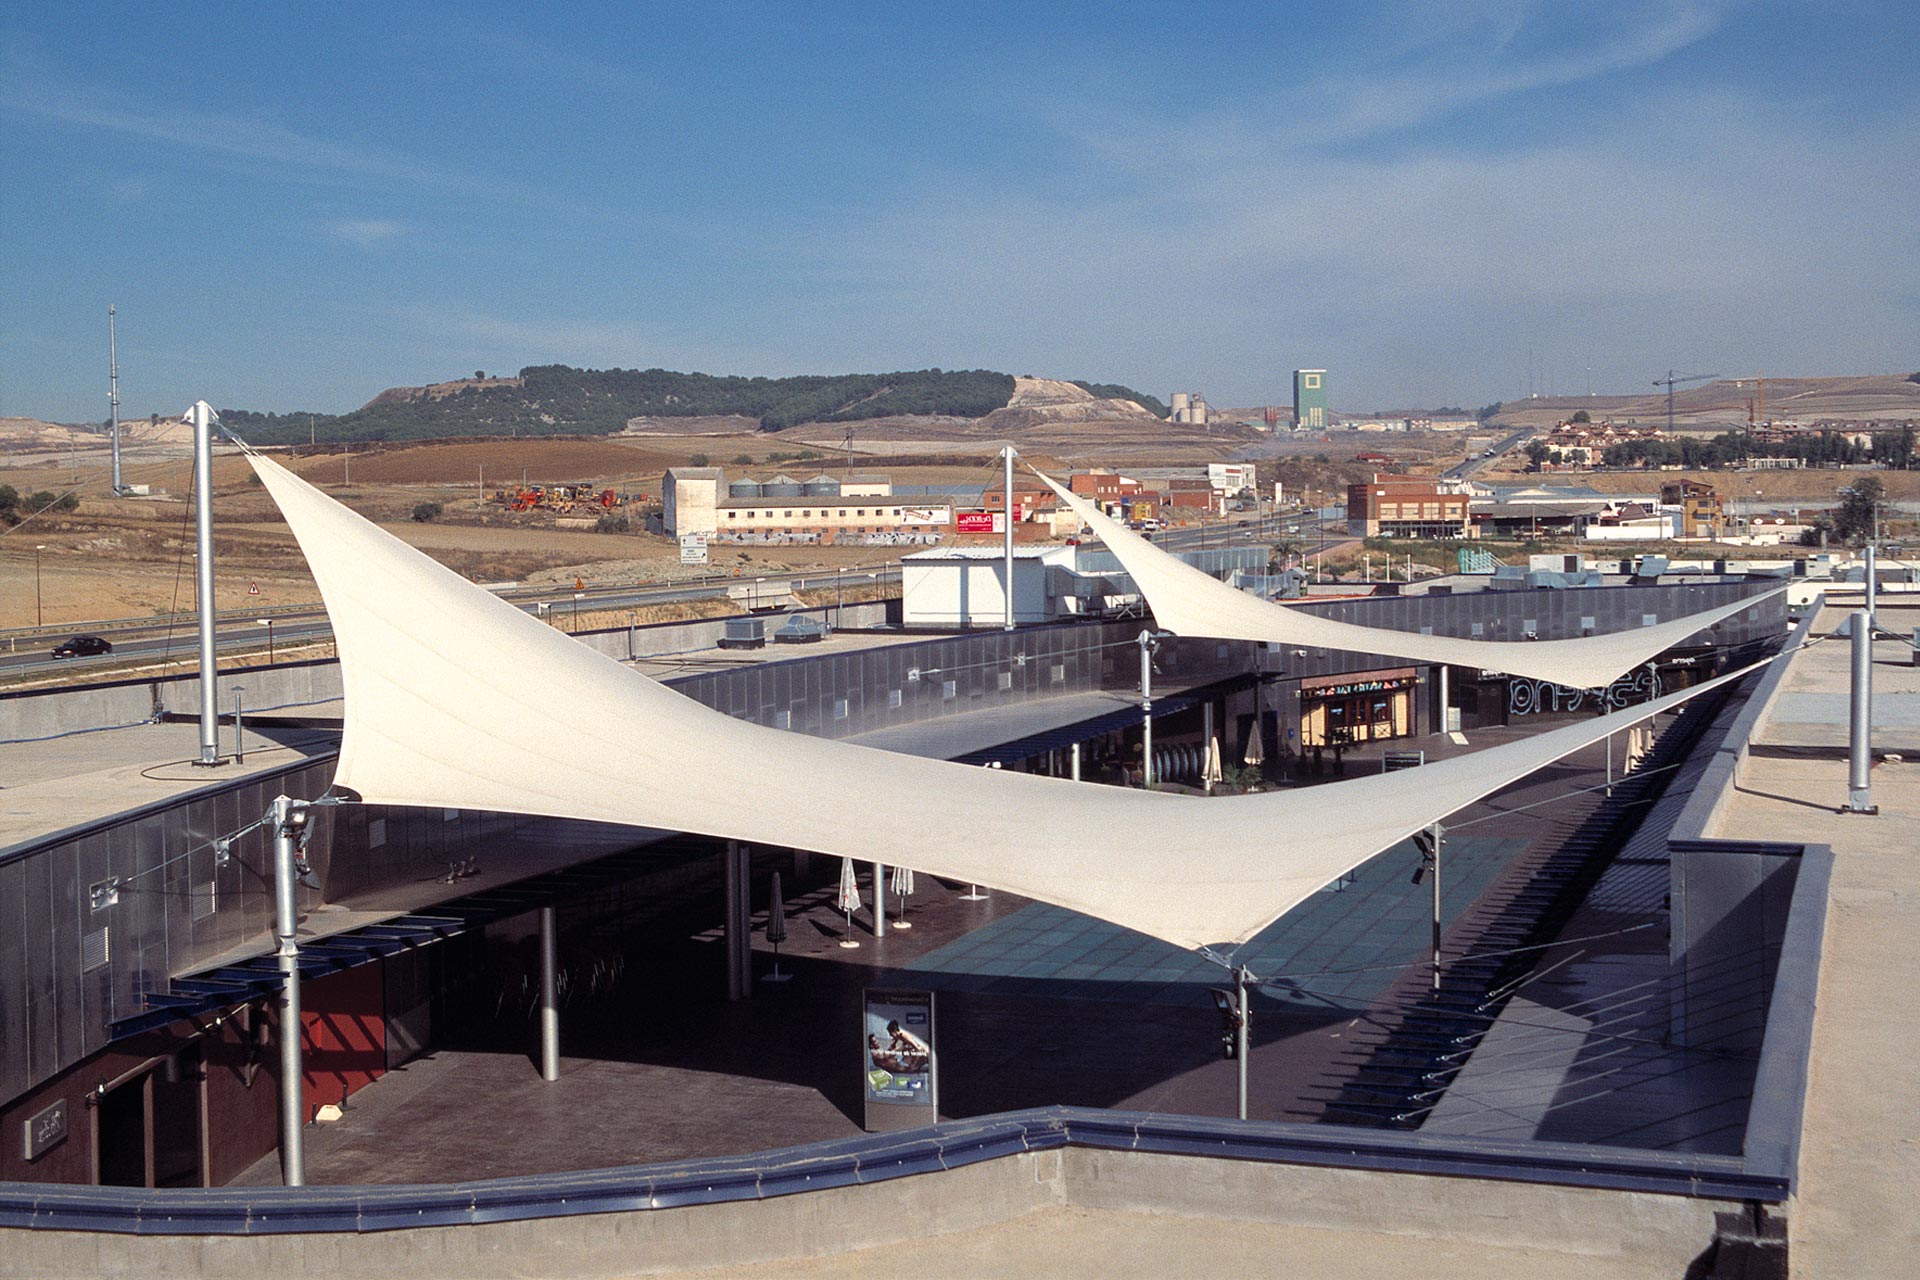 Estructuras tensadas con dos vértices elevados en centro comercial Equinoccio park